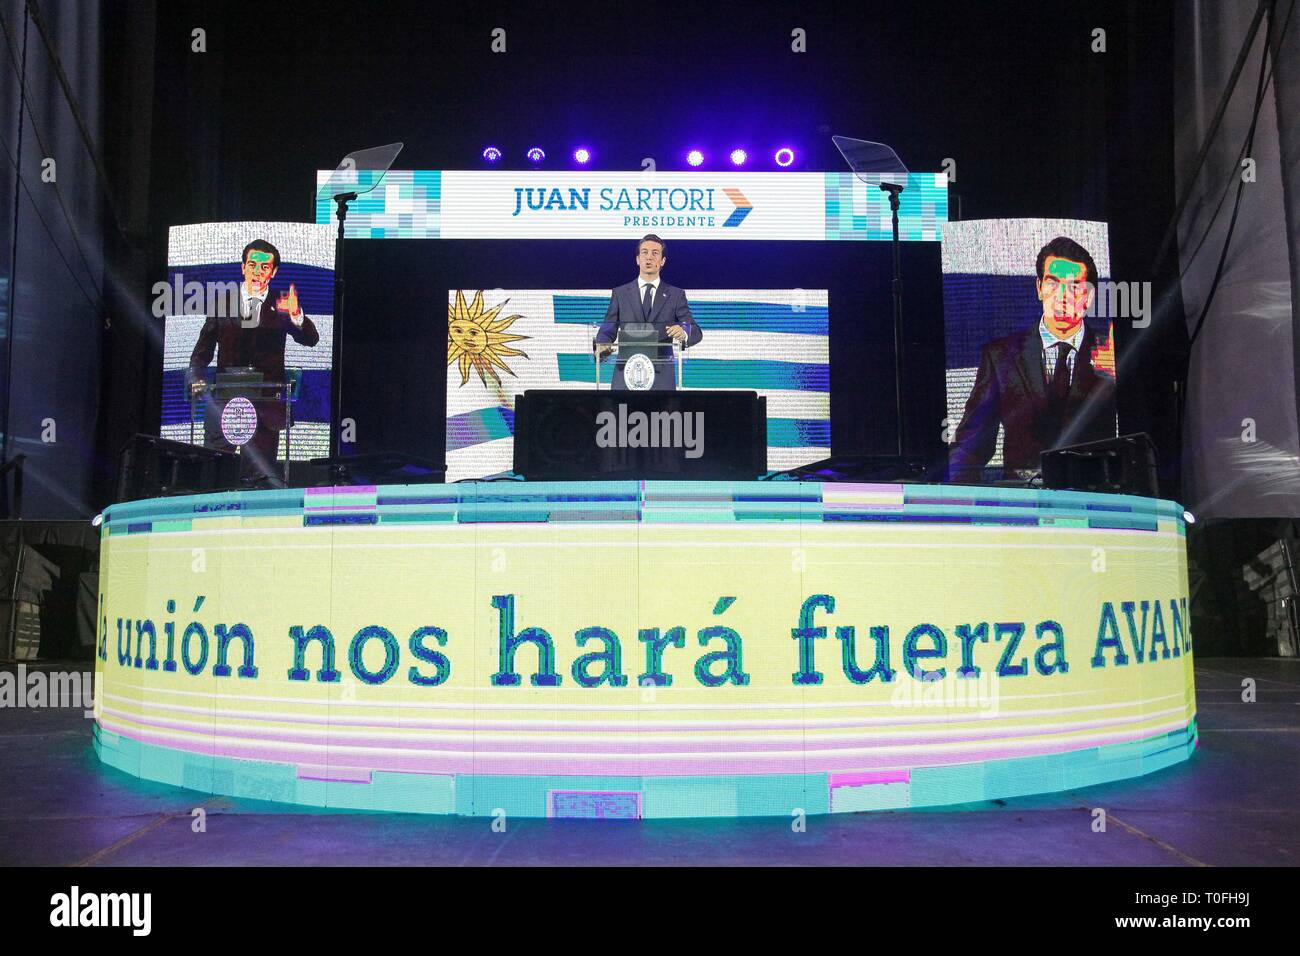 Le pré-candidat pour le Parti National de l'Uruguay, Juan Sartori vu au cours de sa campagne présidentielle discours. Juan Sartori est un 38-year-old milliardaire uruguayen fondateur de l'Union Group company, une société de gestion de placements et d'importants intérêts stratégiques en Amérique latine. Sartori a plusieurs entreprises, l'un d'eux est le club de football anglais Suderland A. F. C. Après 20 ans de vie en Europe, Juan Sartori décide de retourner à l'Uruguay d'être un parti national uruguayen de pré-candidat aux élections présidentielles de 2019. Banque D'Images